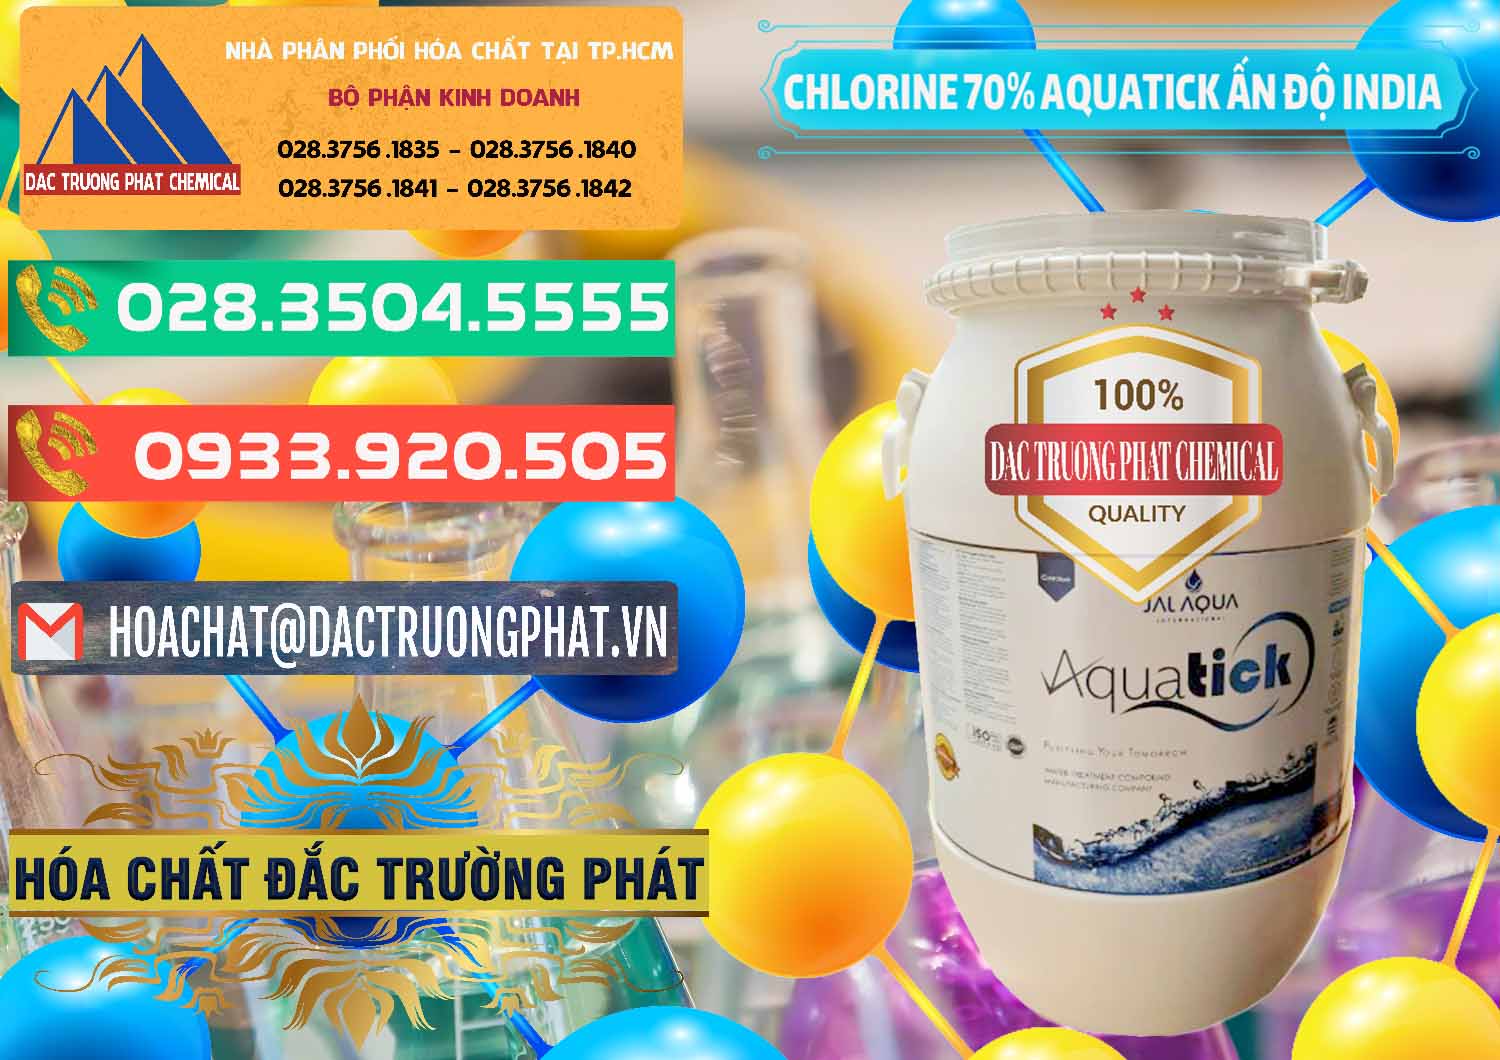 Công ty chuyên bán - cung ứng Chlorine – Clorin 70% Aquatick Jal Aqua Ấn Độ India - 0215 - Chuyên cung cấp & phân phối hóa chất tại TP.HCM - congtyhoachat.com.vn